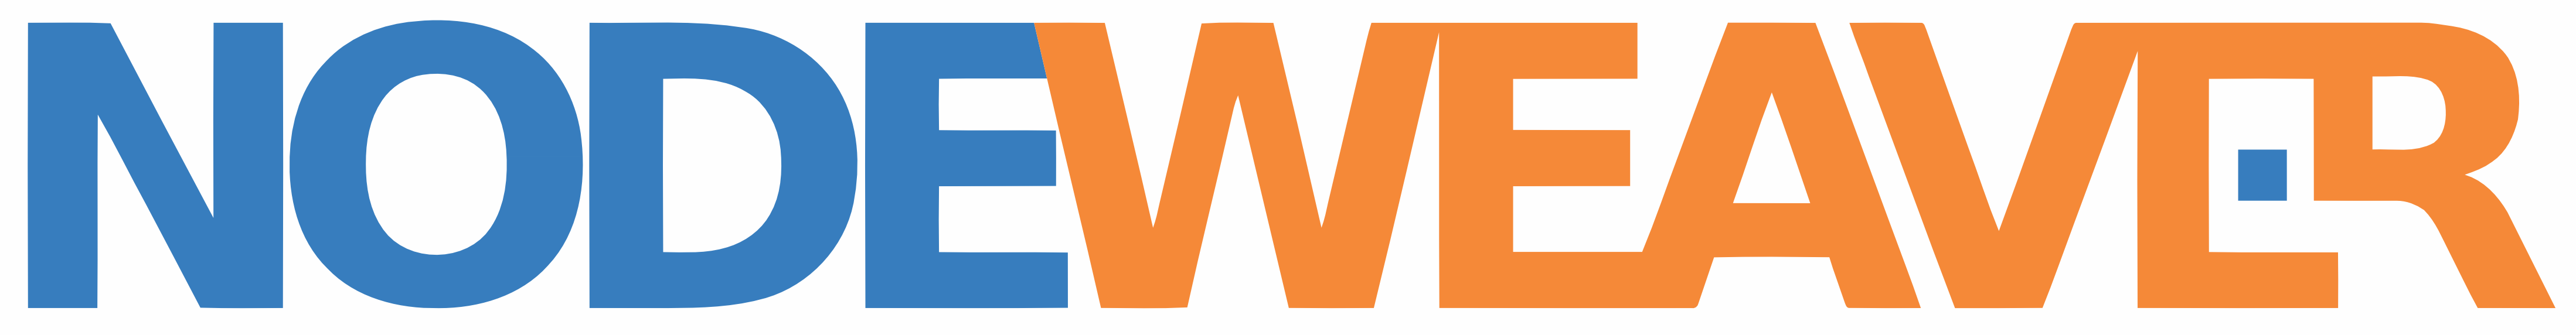 nodeweaver-logo (1)